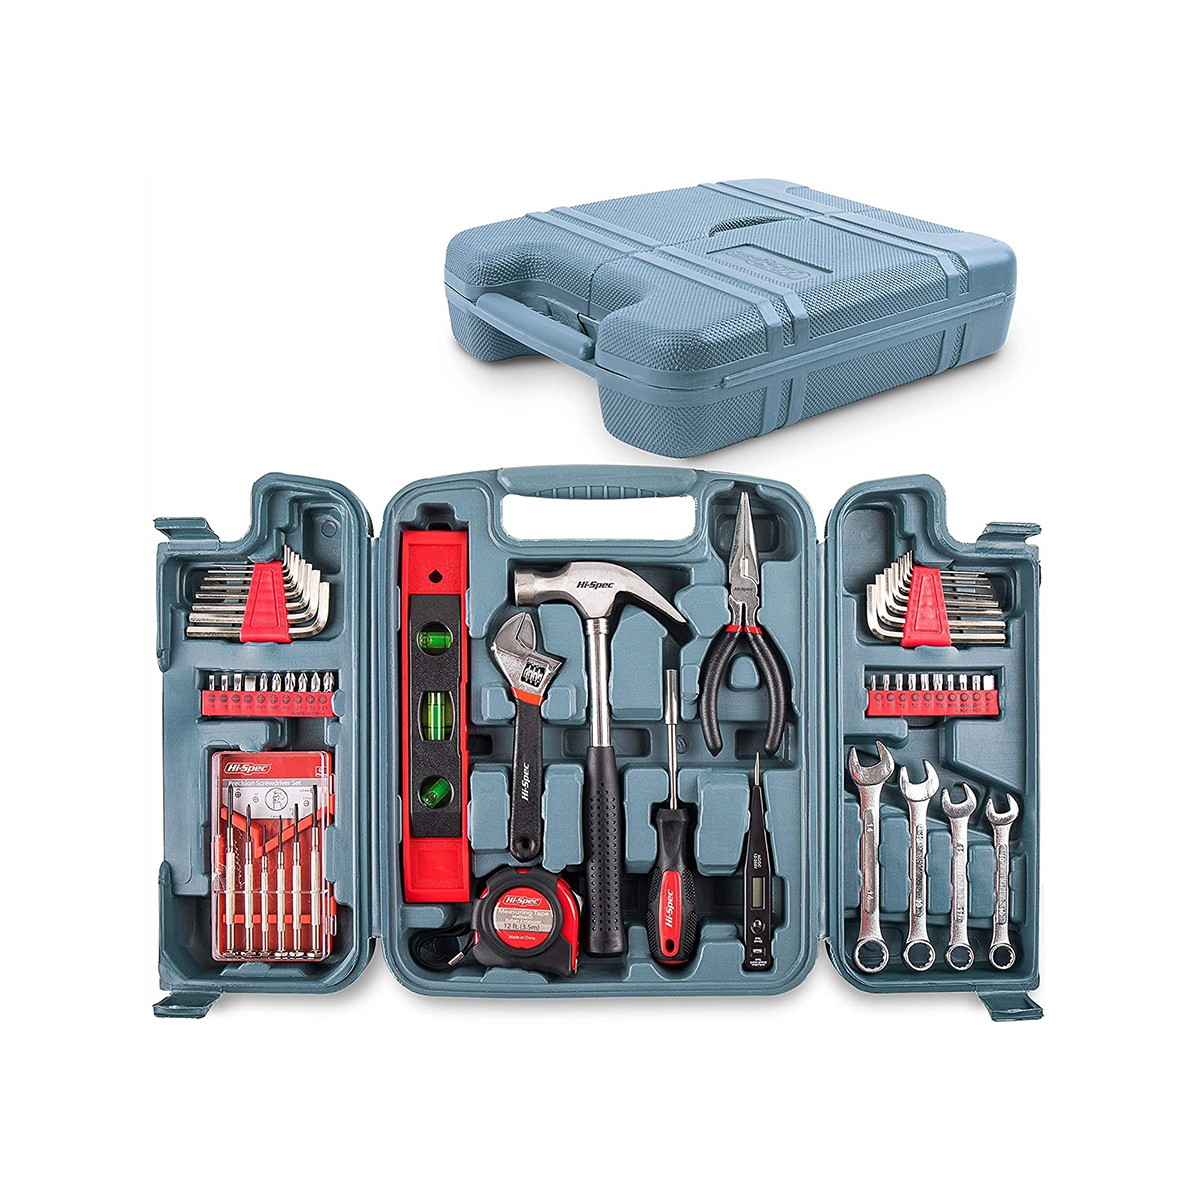 53 stks Muti Purpose Combo Kit Handgereedschap Huishoudelijke Thuis Repareren Diy Kits Complet Tool Set